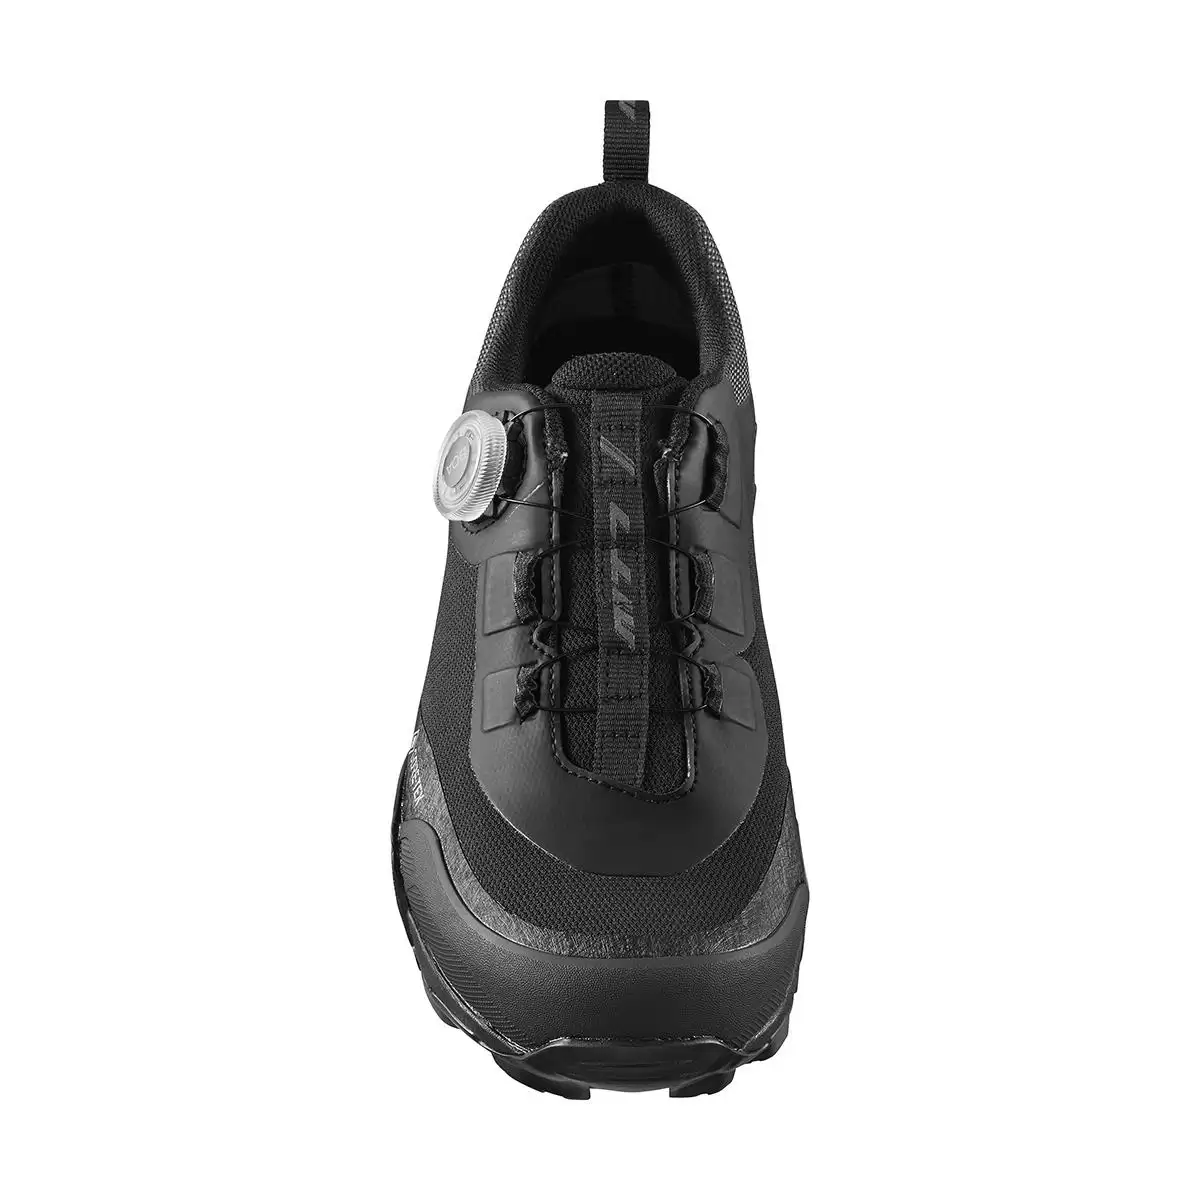 MTB Shoes SH-MT701GTX MT701 Black Size 41 #1